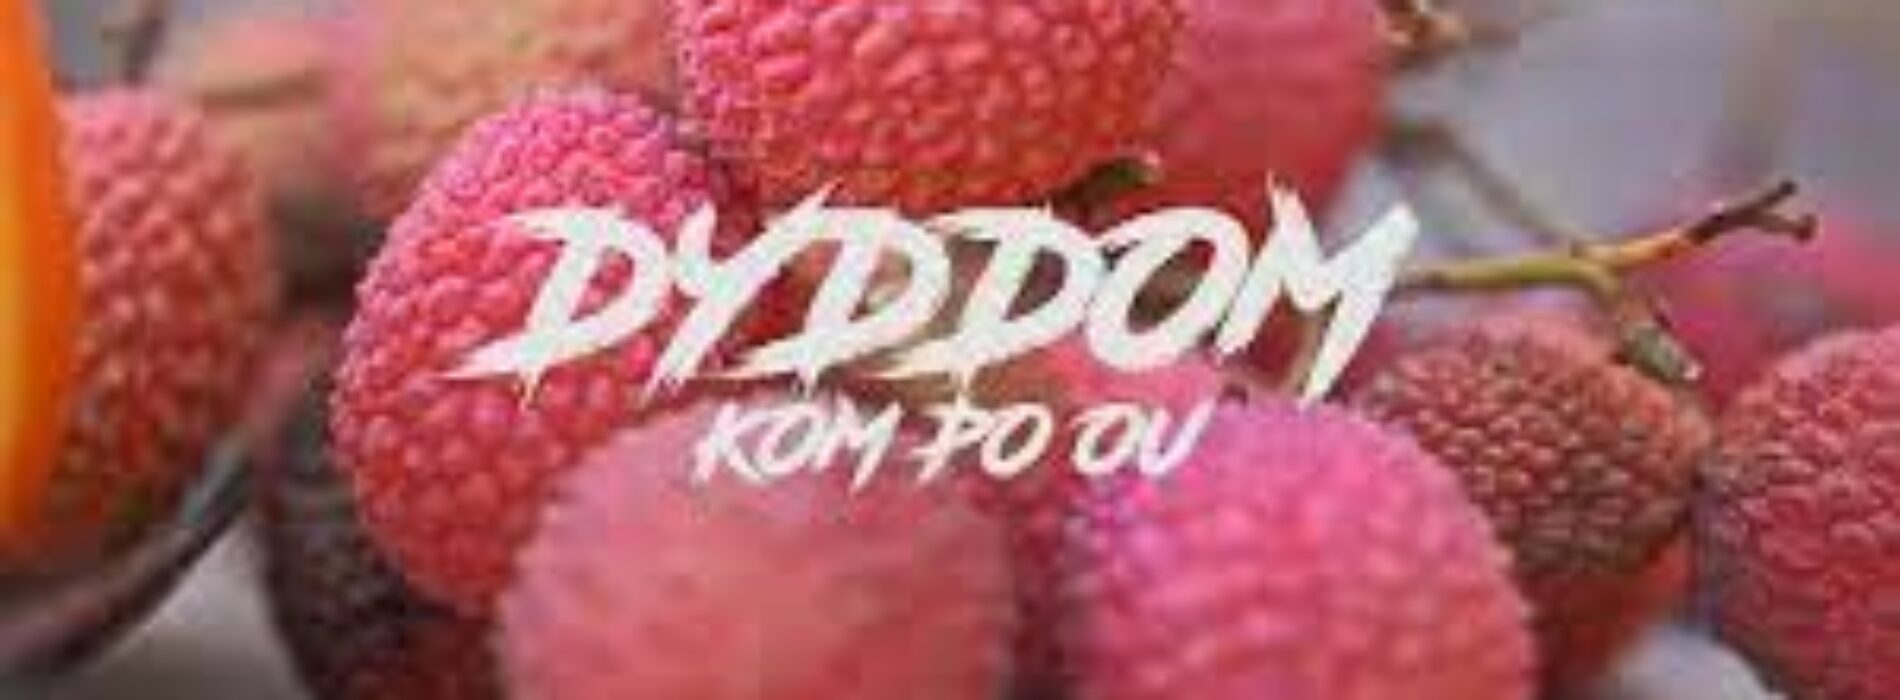 Dyddom – « Kom po ou » (clip officiel) – Décembre 2022